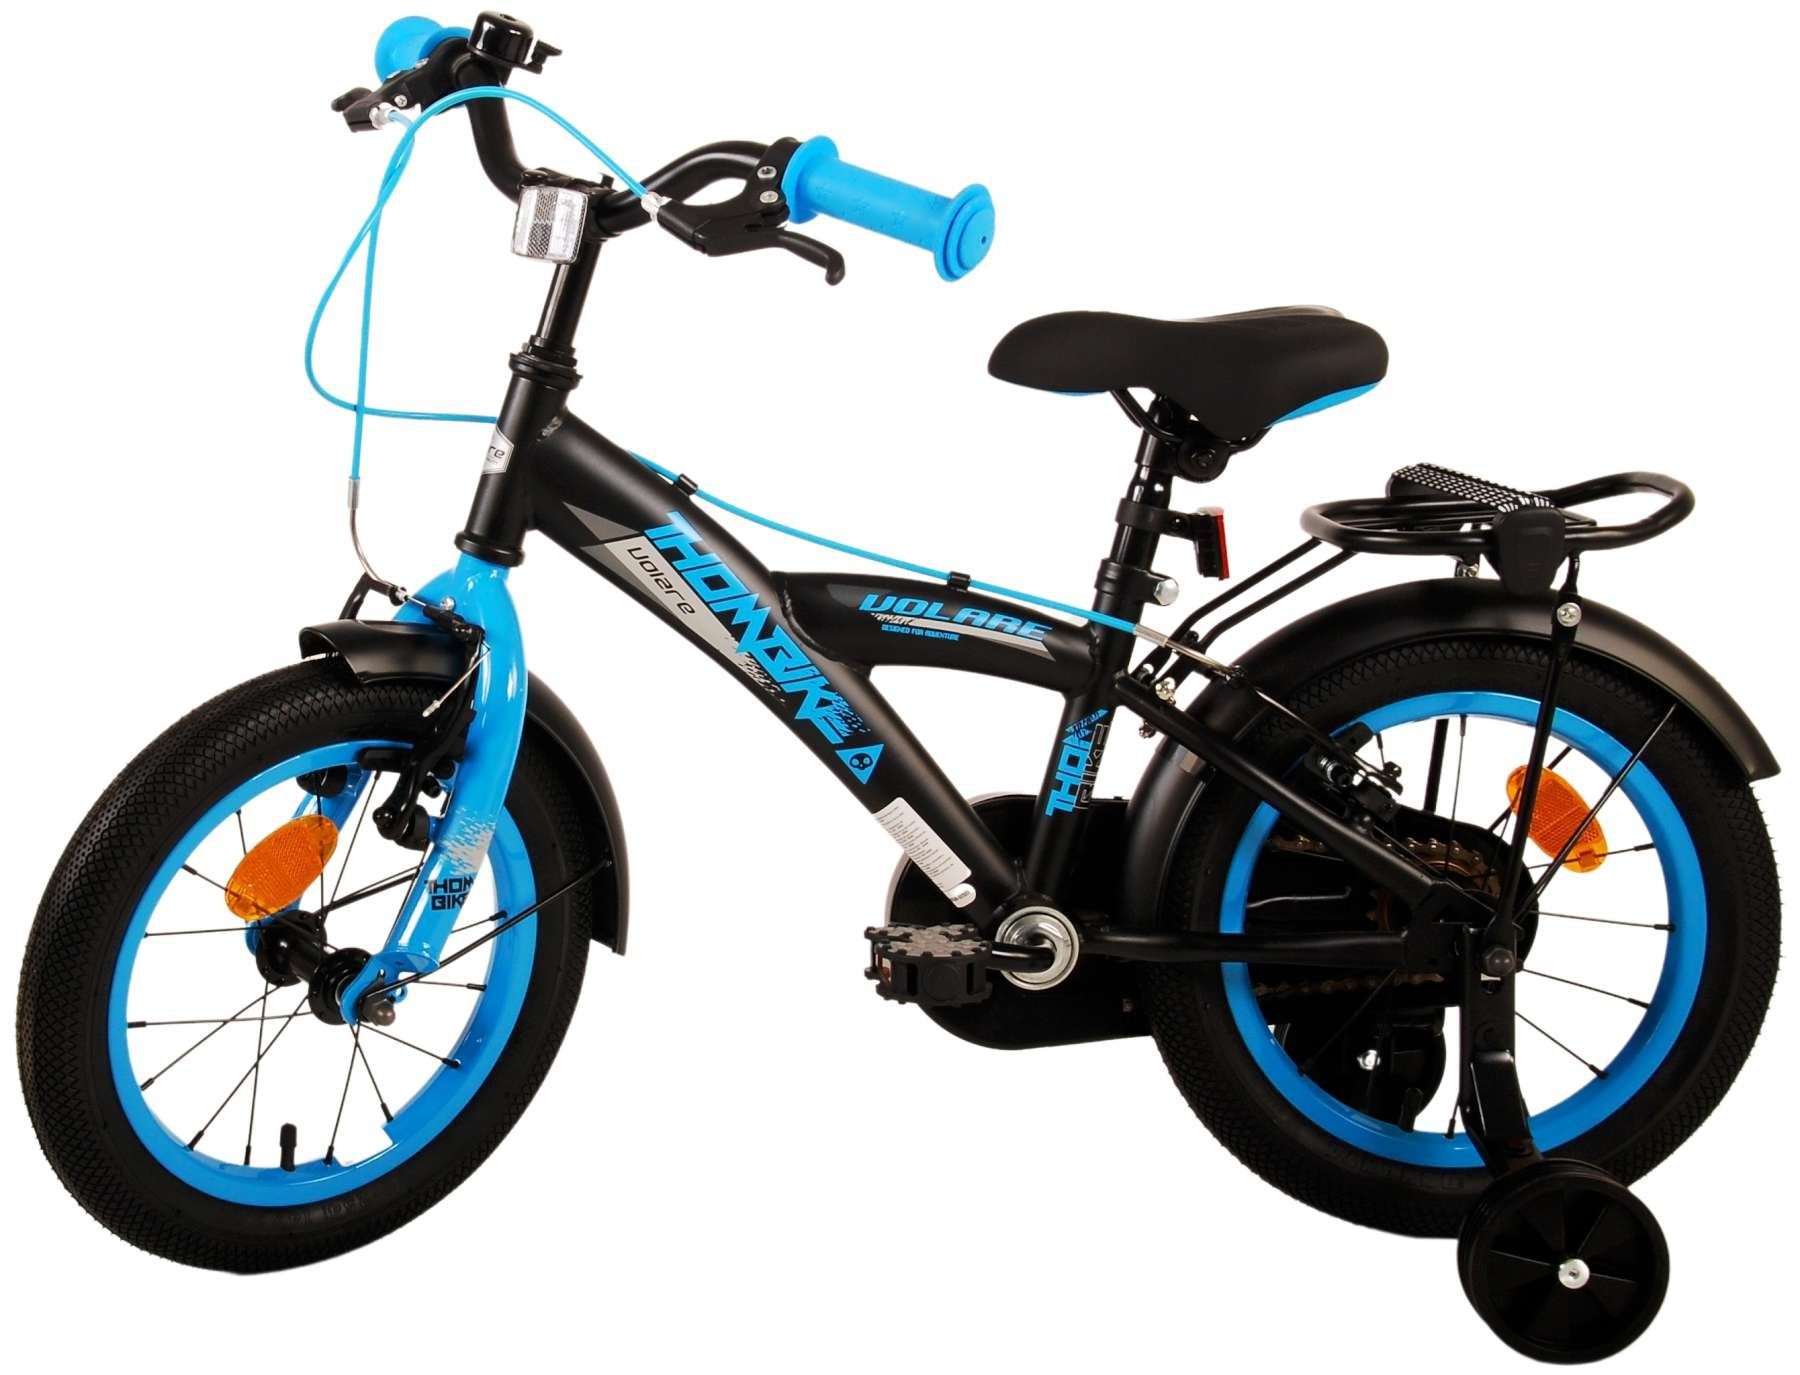 Blau - ohne - - Zoll Stützräder mit Kinderrad Schaltung TPFSports Sicherheitsgriffe), Zoll Thombike Fahrrad Jungen Jungs Gang, Kinder 1 (Jungsfahrrad 2x Fahrrad - Volare - mit Kinderfahrrad Handbremse, 14 14